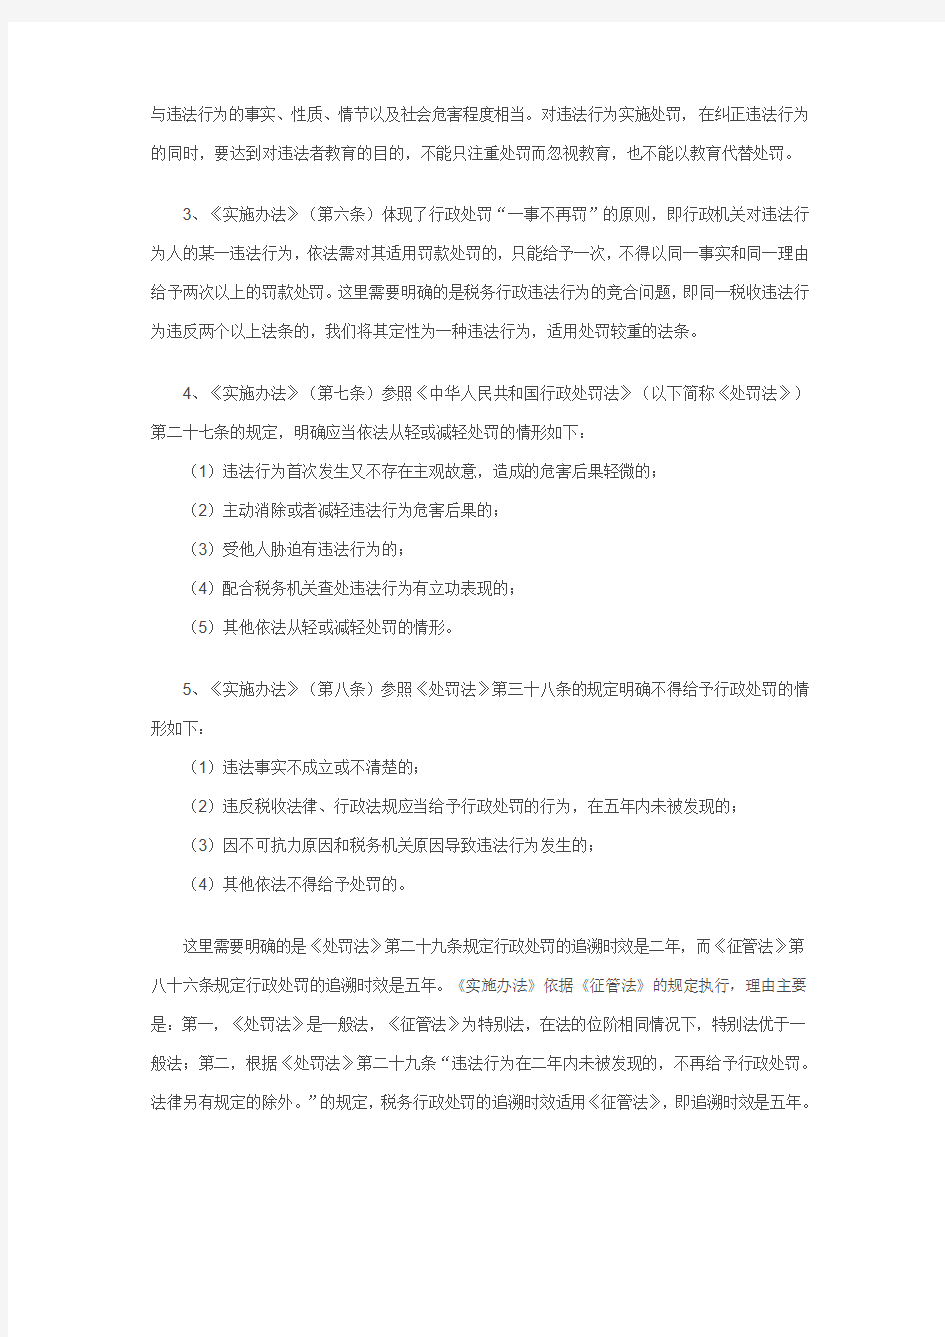 《海南省地方税务局规范税务行政处罚自由裁量权实施办法》解读